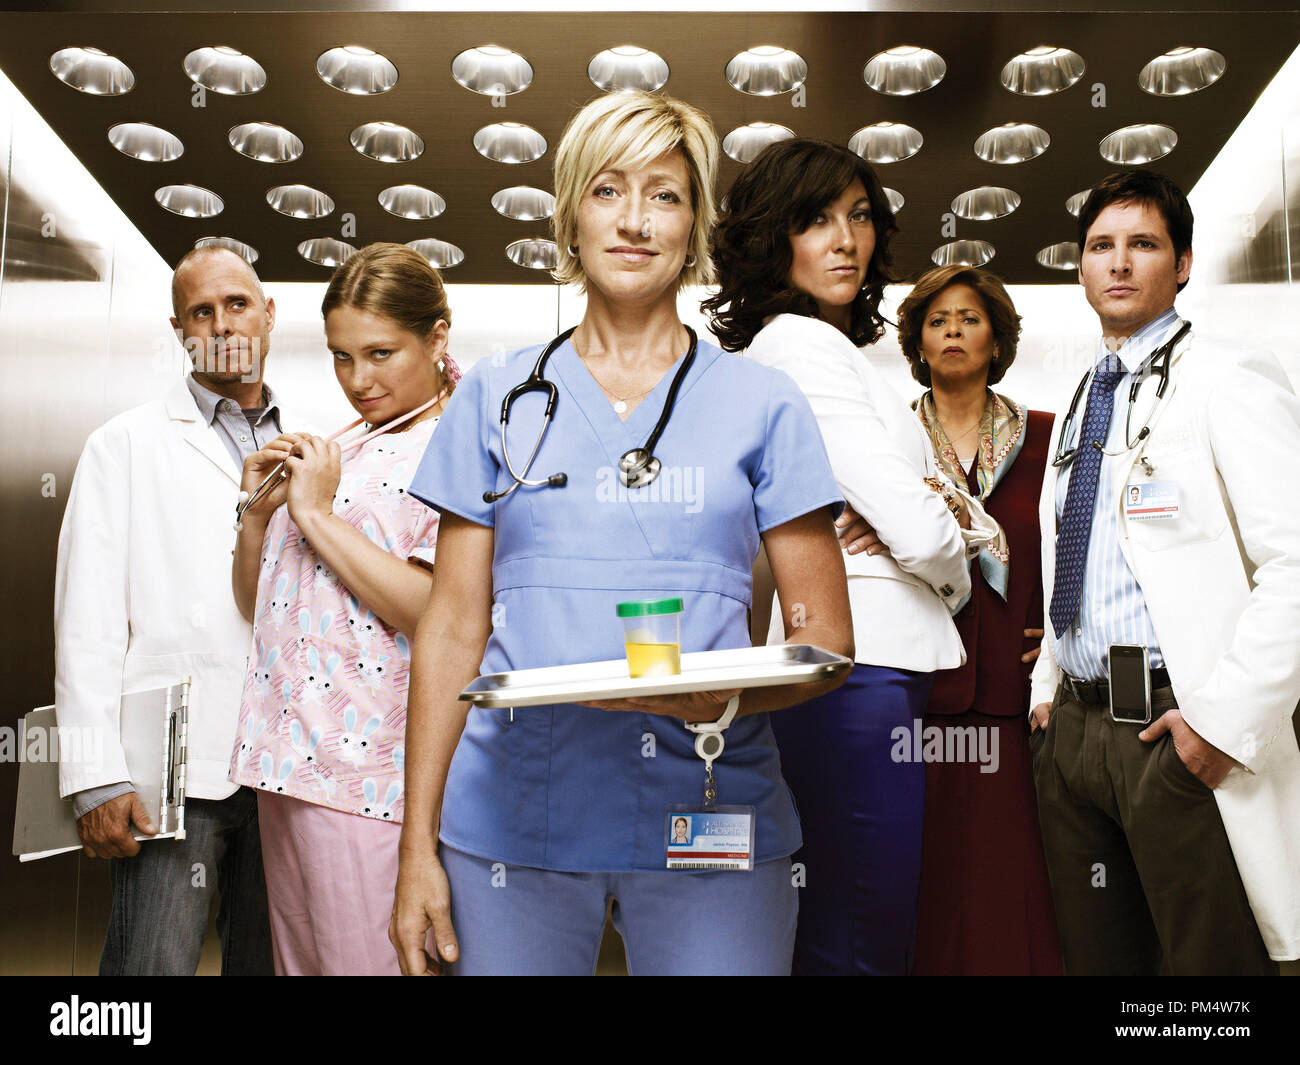 Edie Falco "Nurse Jackie" 2010 Stock Photo